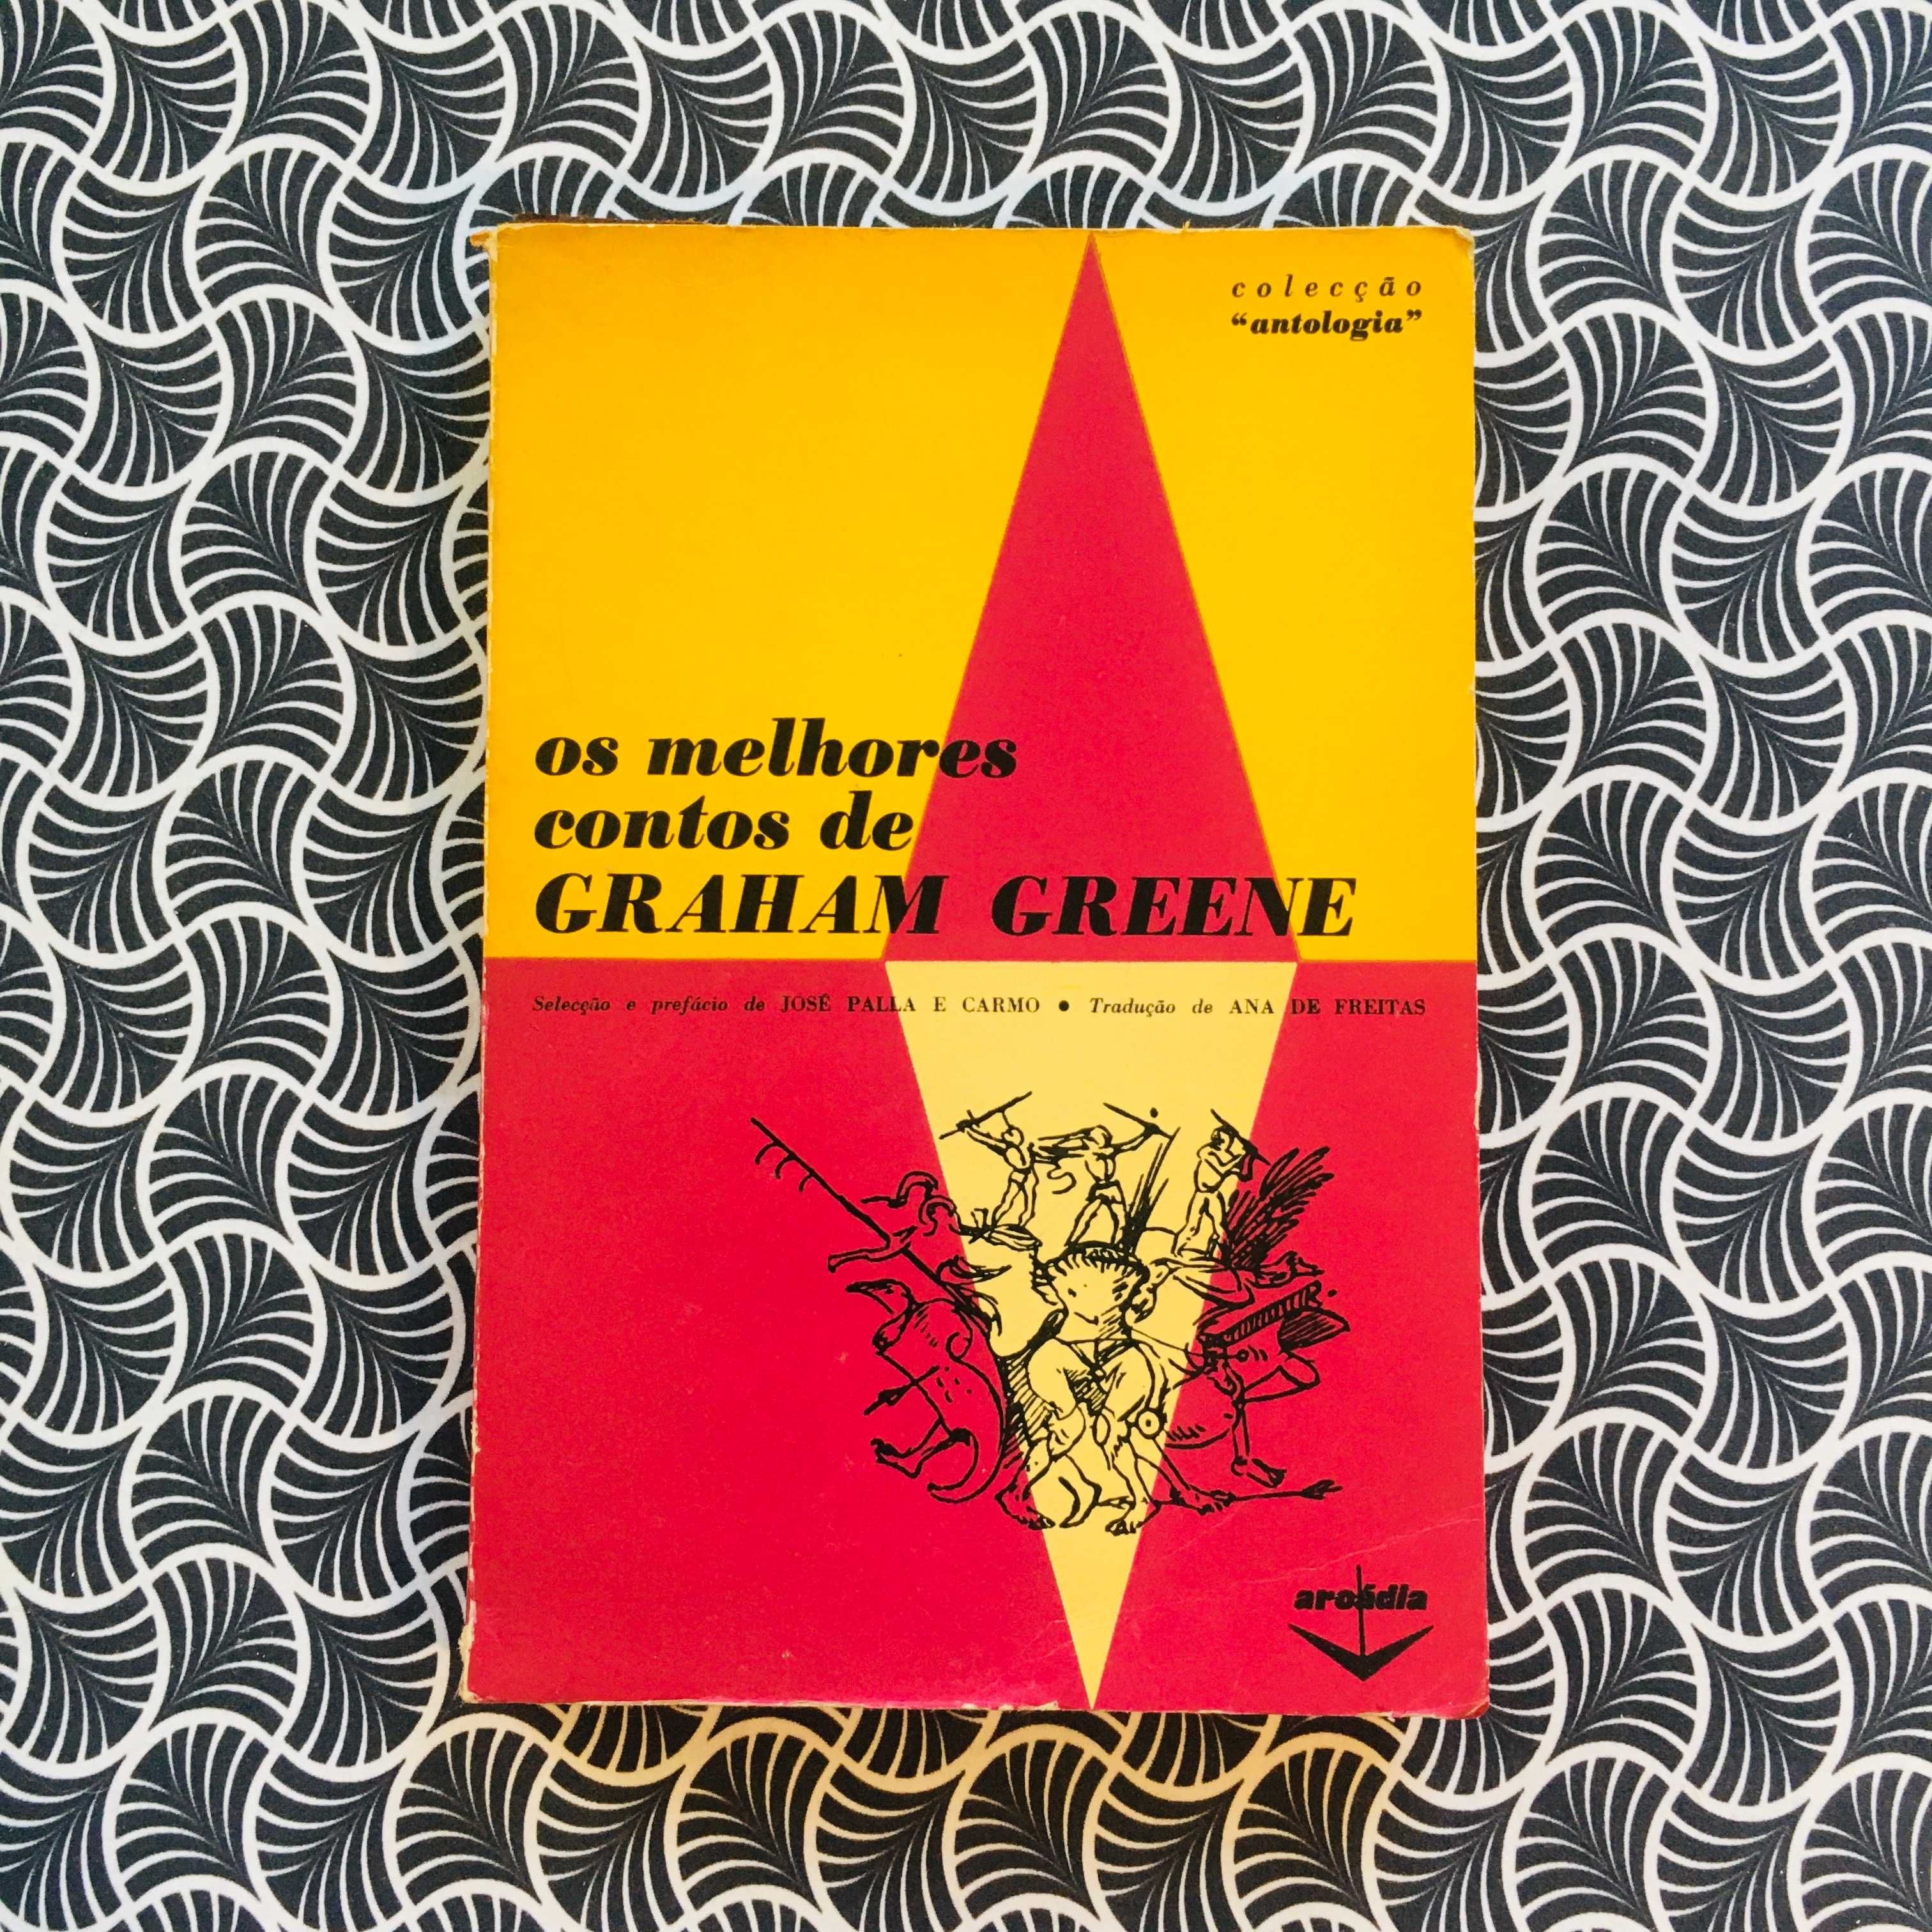 Os Melhores Contos de Graham Greene